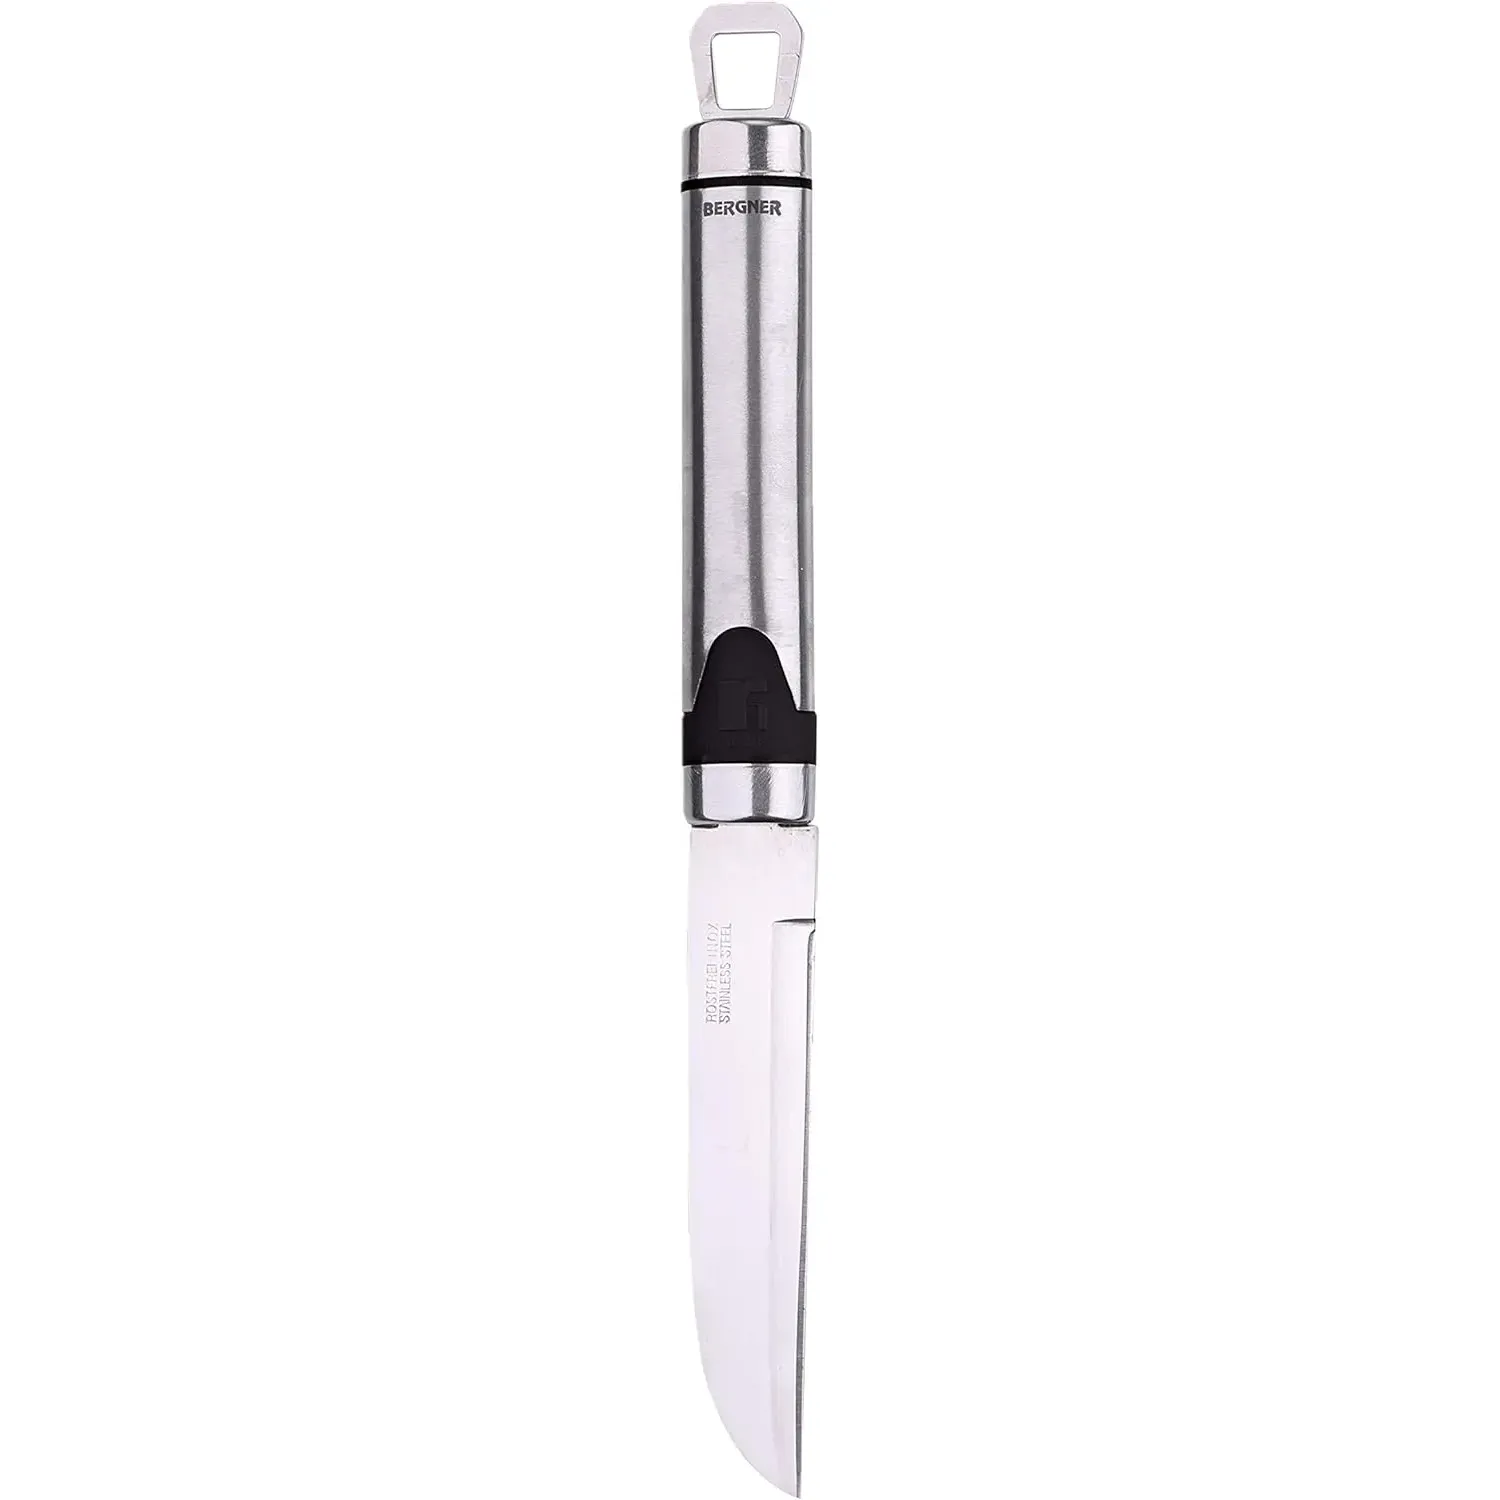 Нож для чистки овощей Bergner Gizmo 20 см (BG-3213) - фото 2